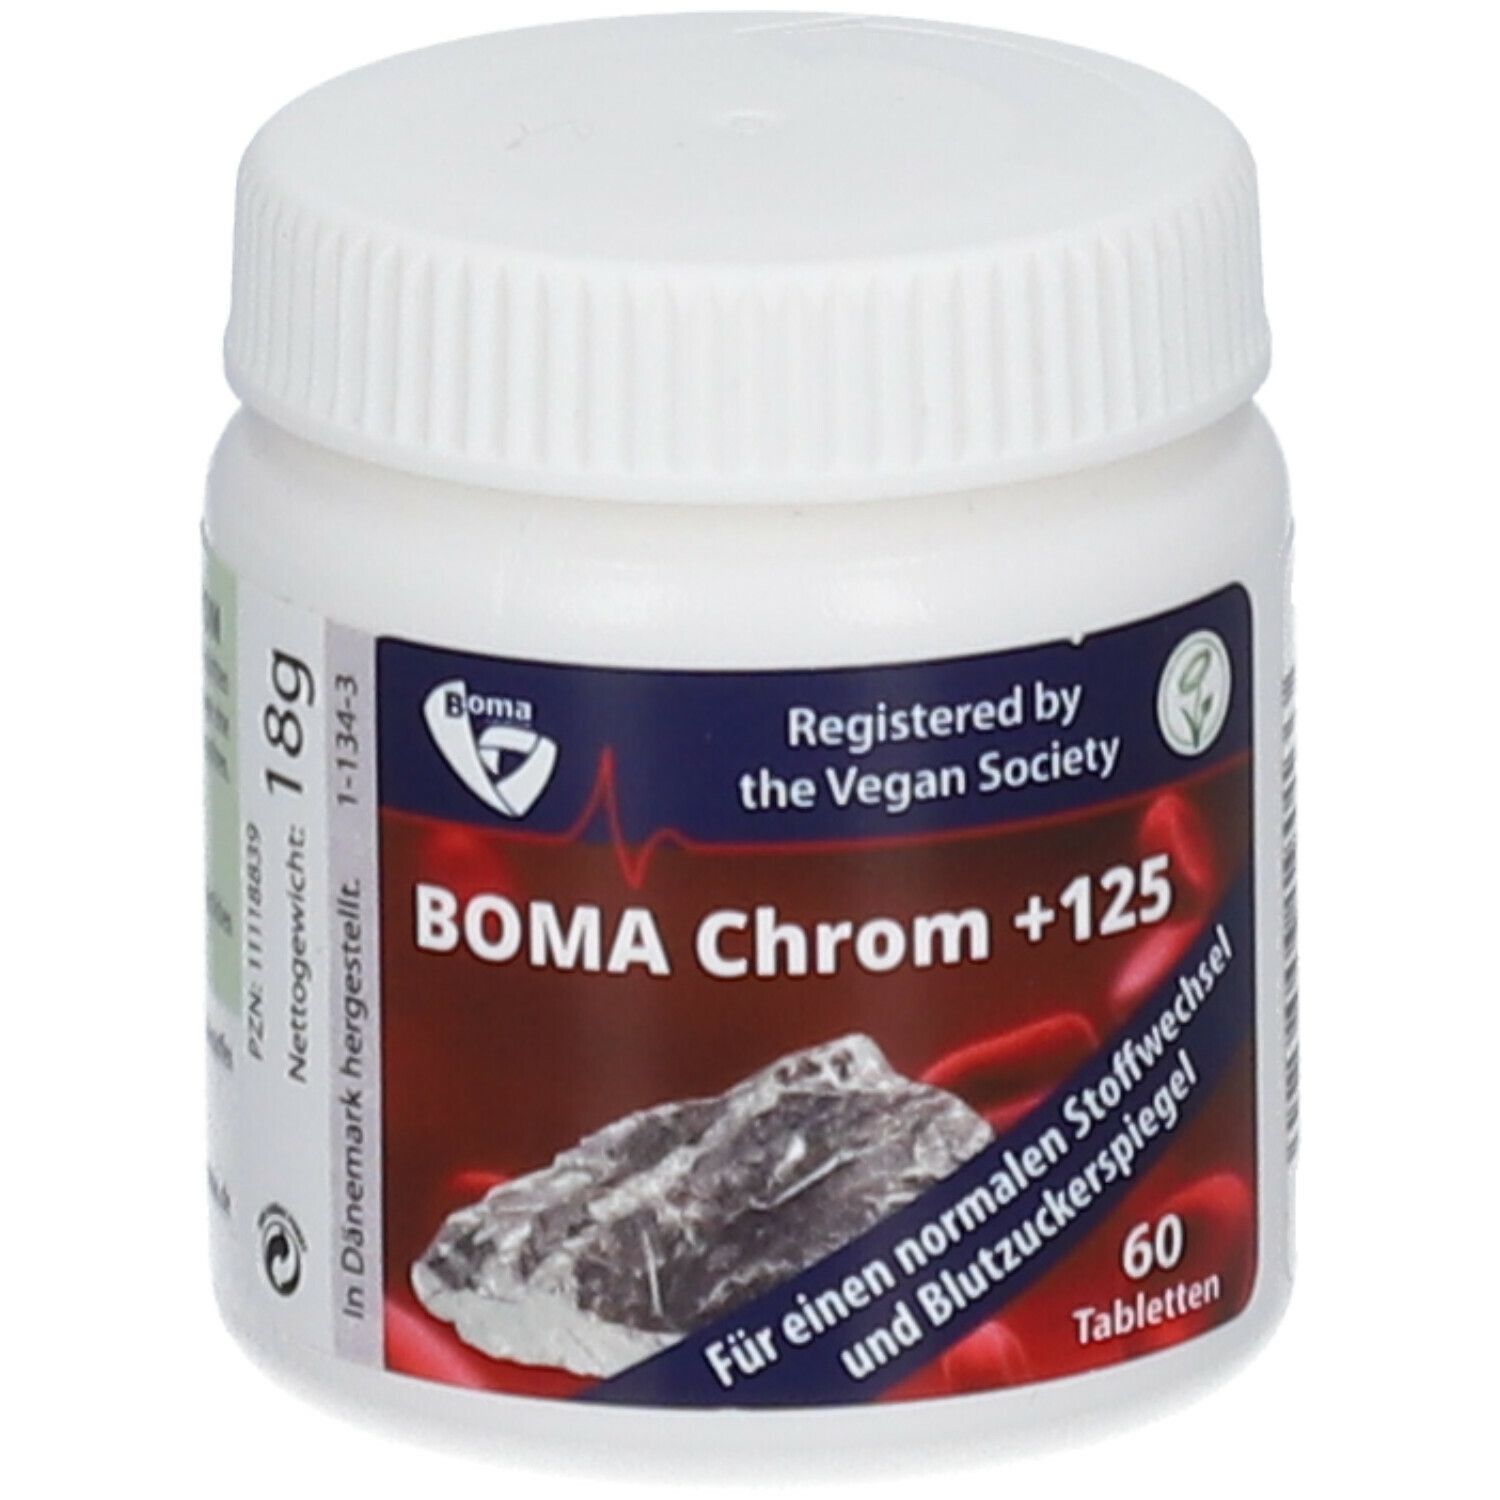 Boma Chrom + 125